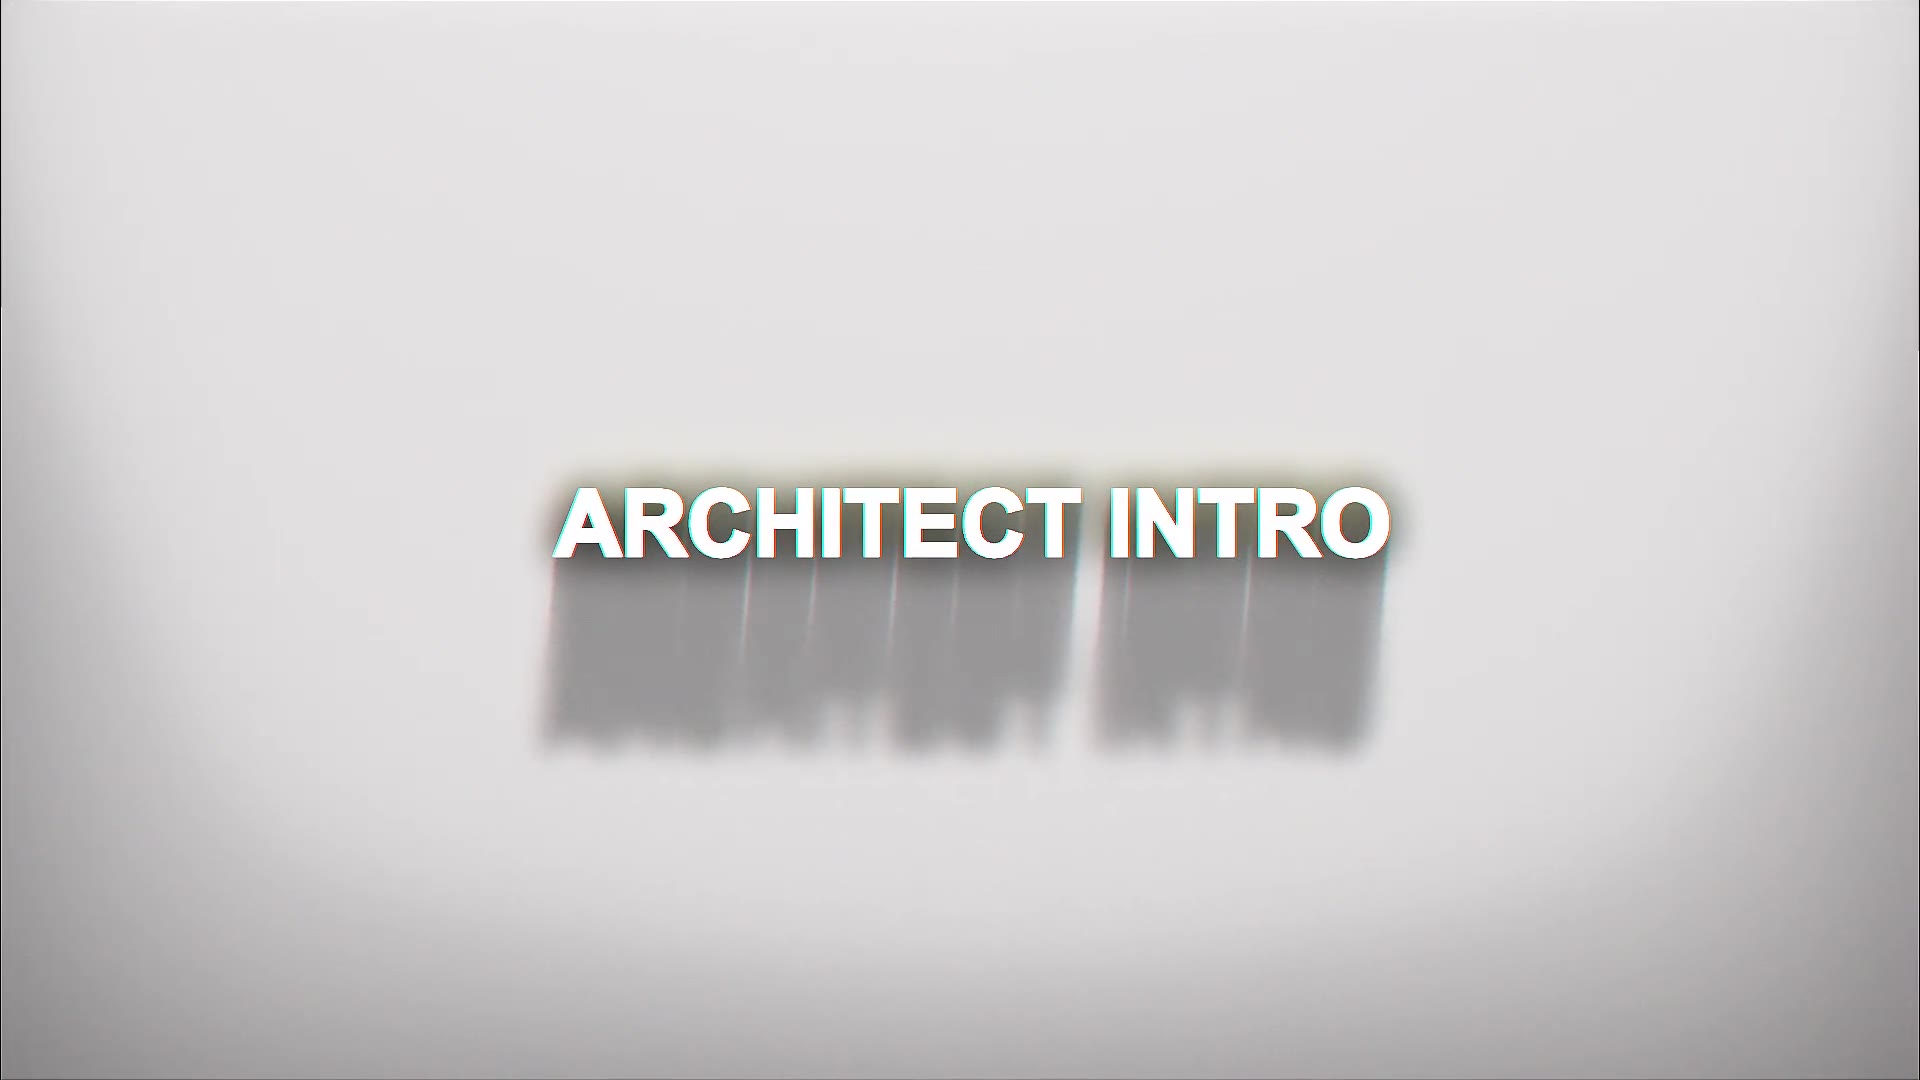 Architect Intro Videohive 30289475 Premiere Pro Image 5